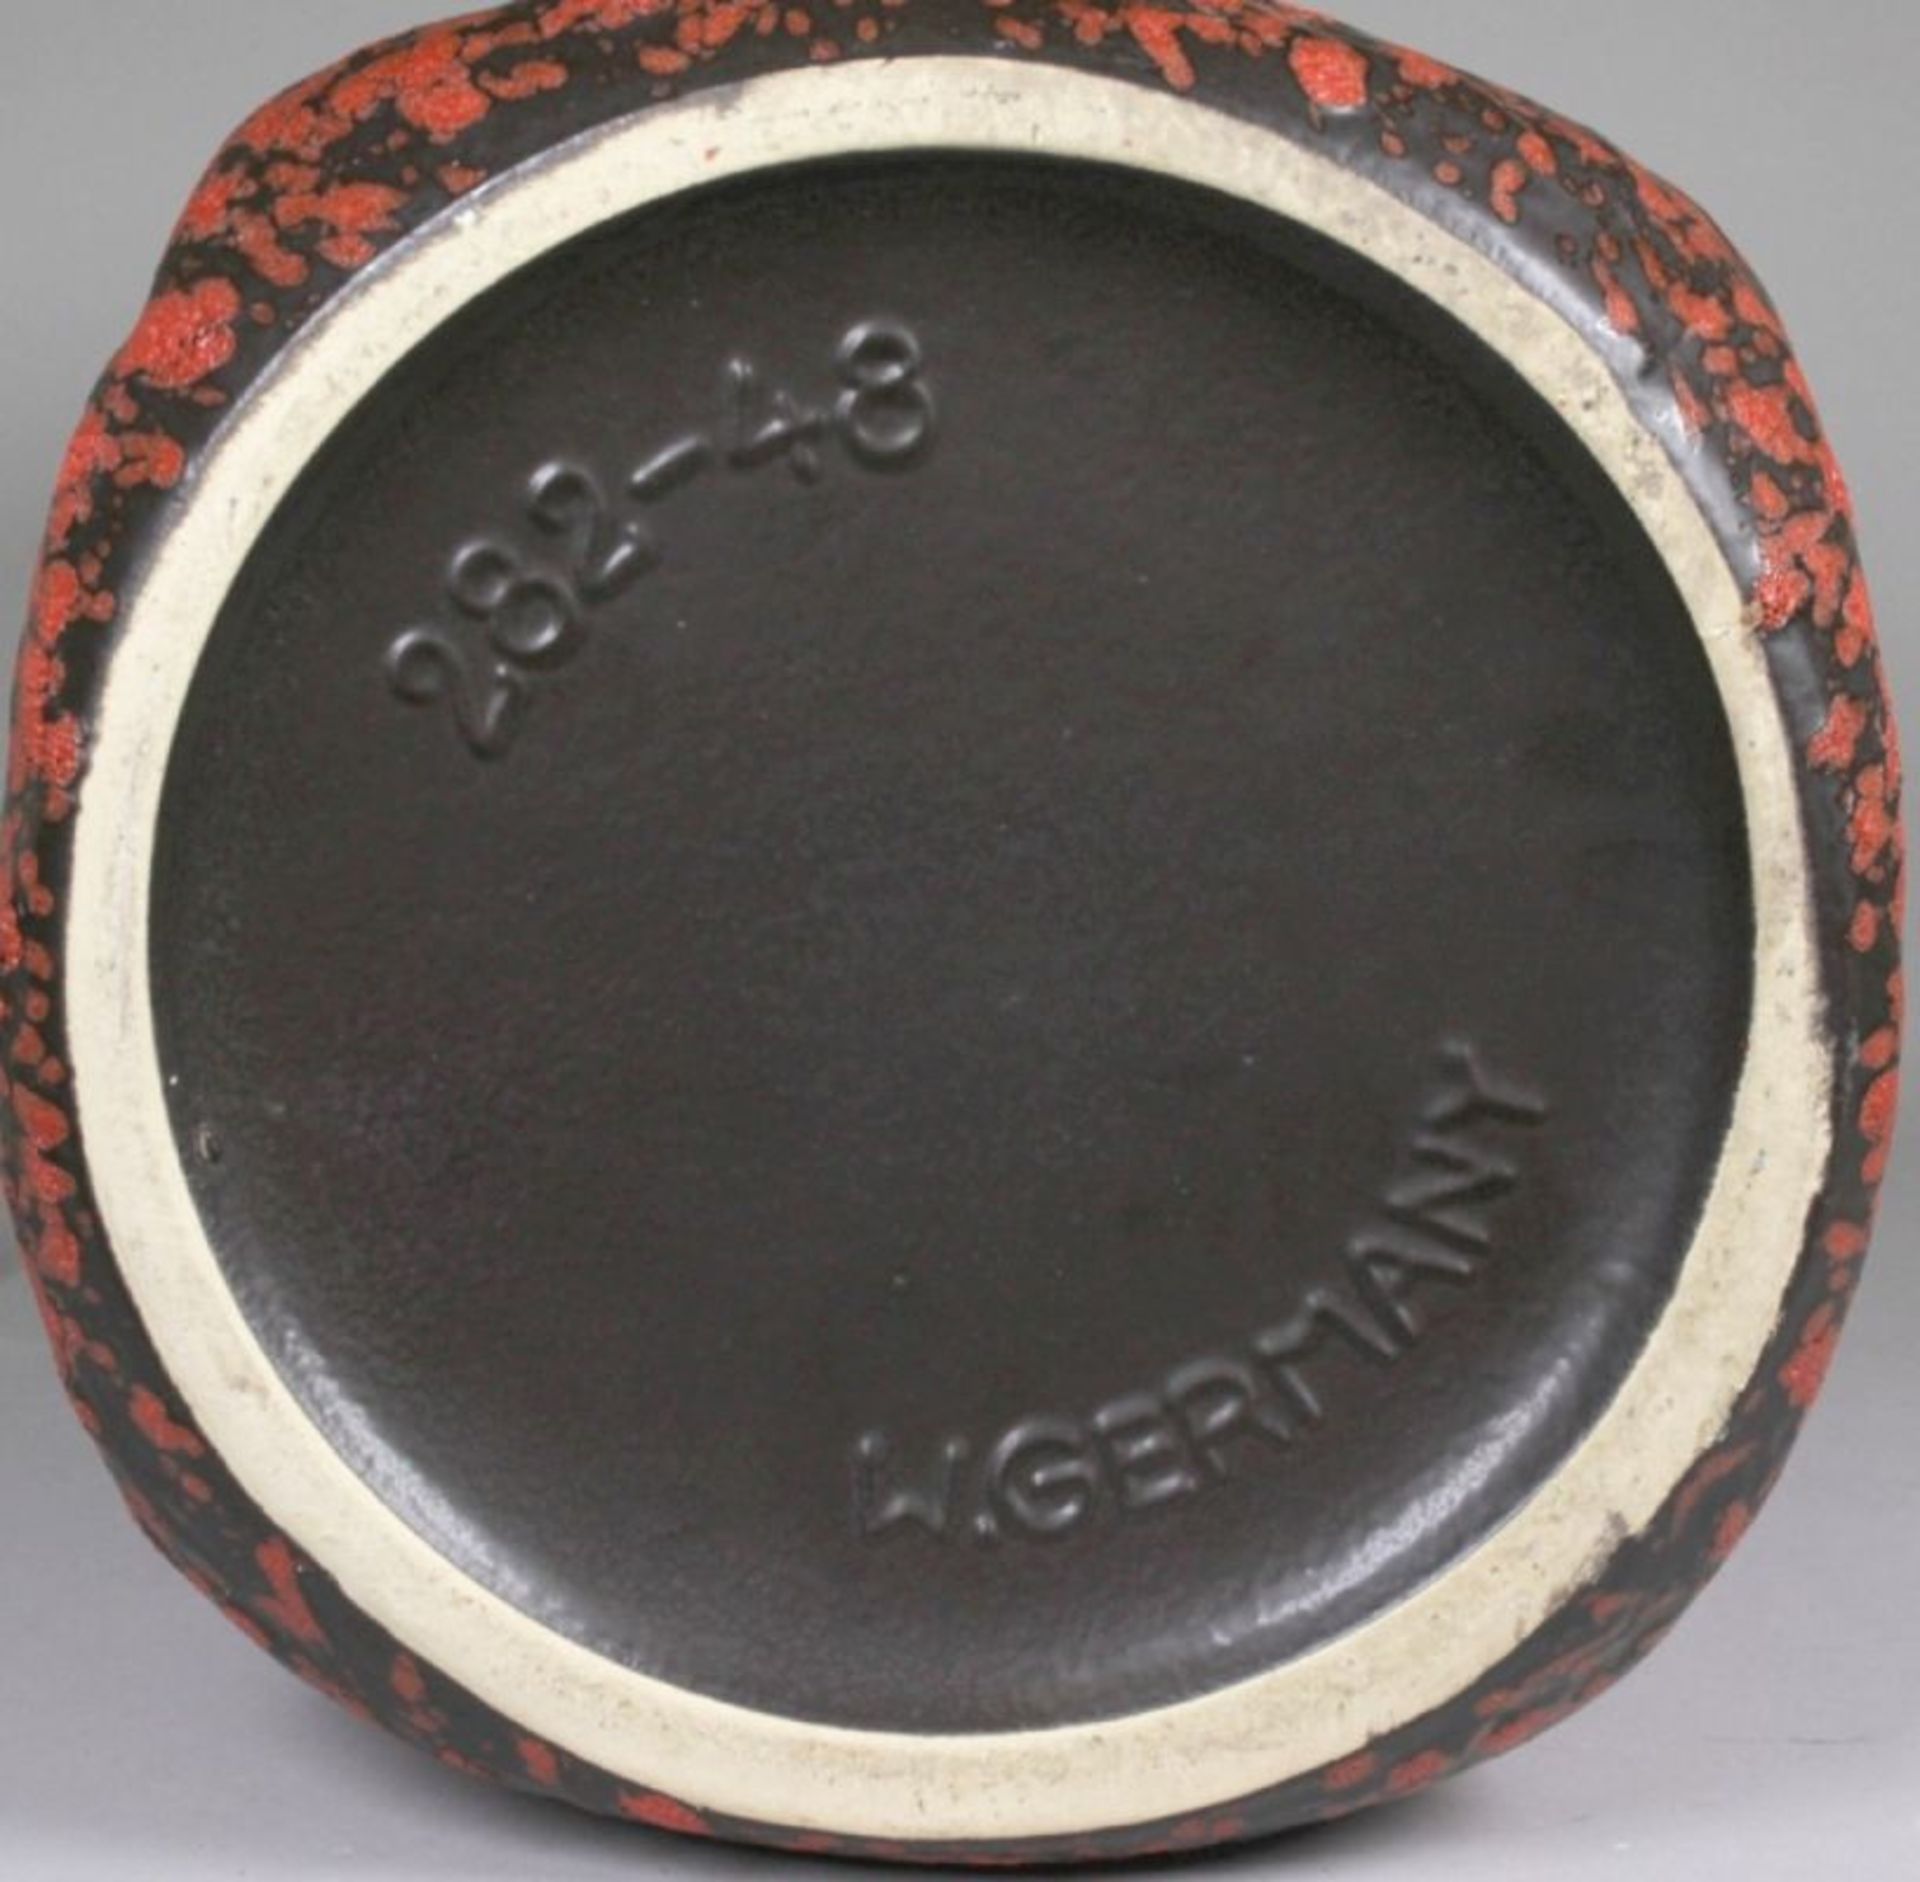 Keramik-Bodenvase, Scheurich KG, Kleinheubach, 70er Jahre, Mod.nr.: 282-48, runder Stand,hoher, - Bild 2 aus 2